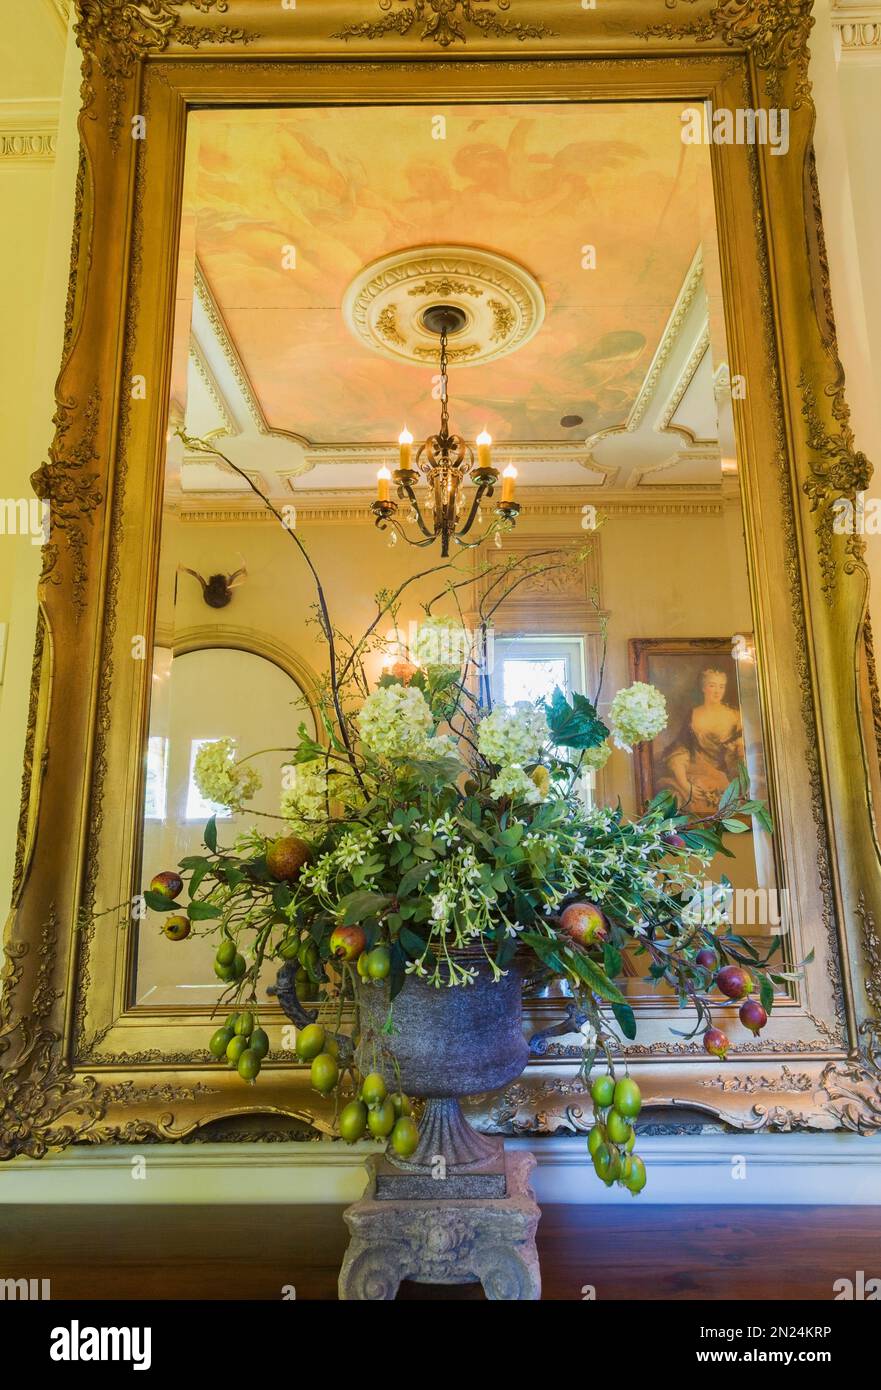 Vase fleur en céramique et grand miroir mural avec cadre en bois antique dans le bureau à domicile à l'intérieur de la maison de style Renaissance. Banque D'Images